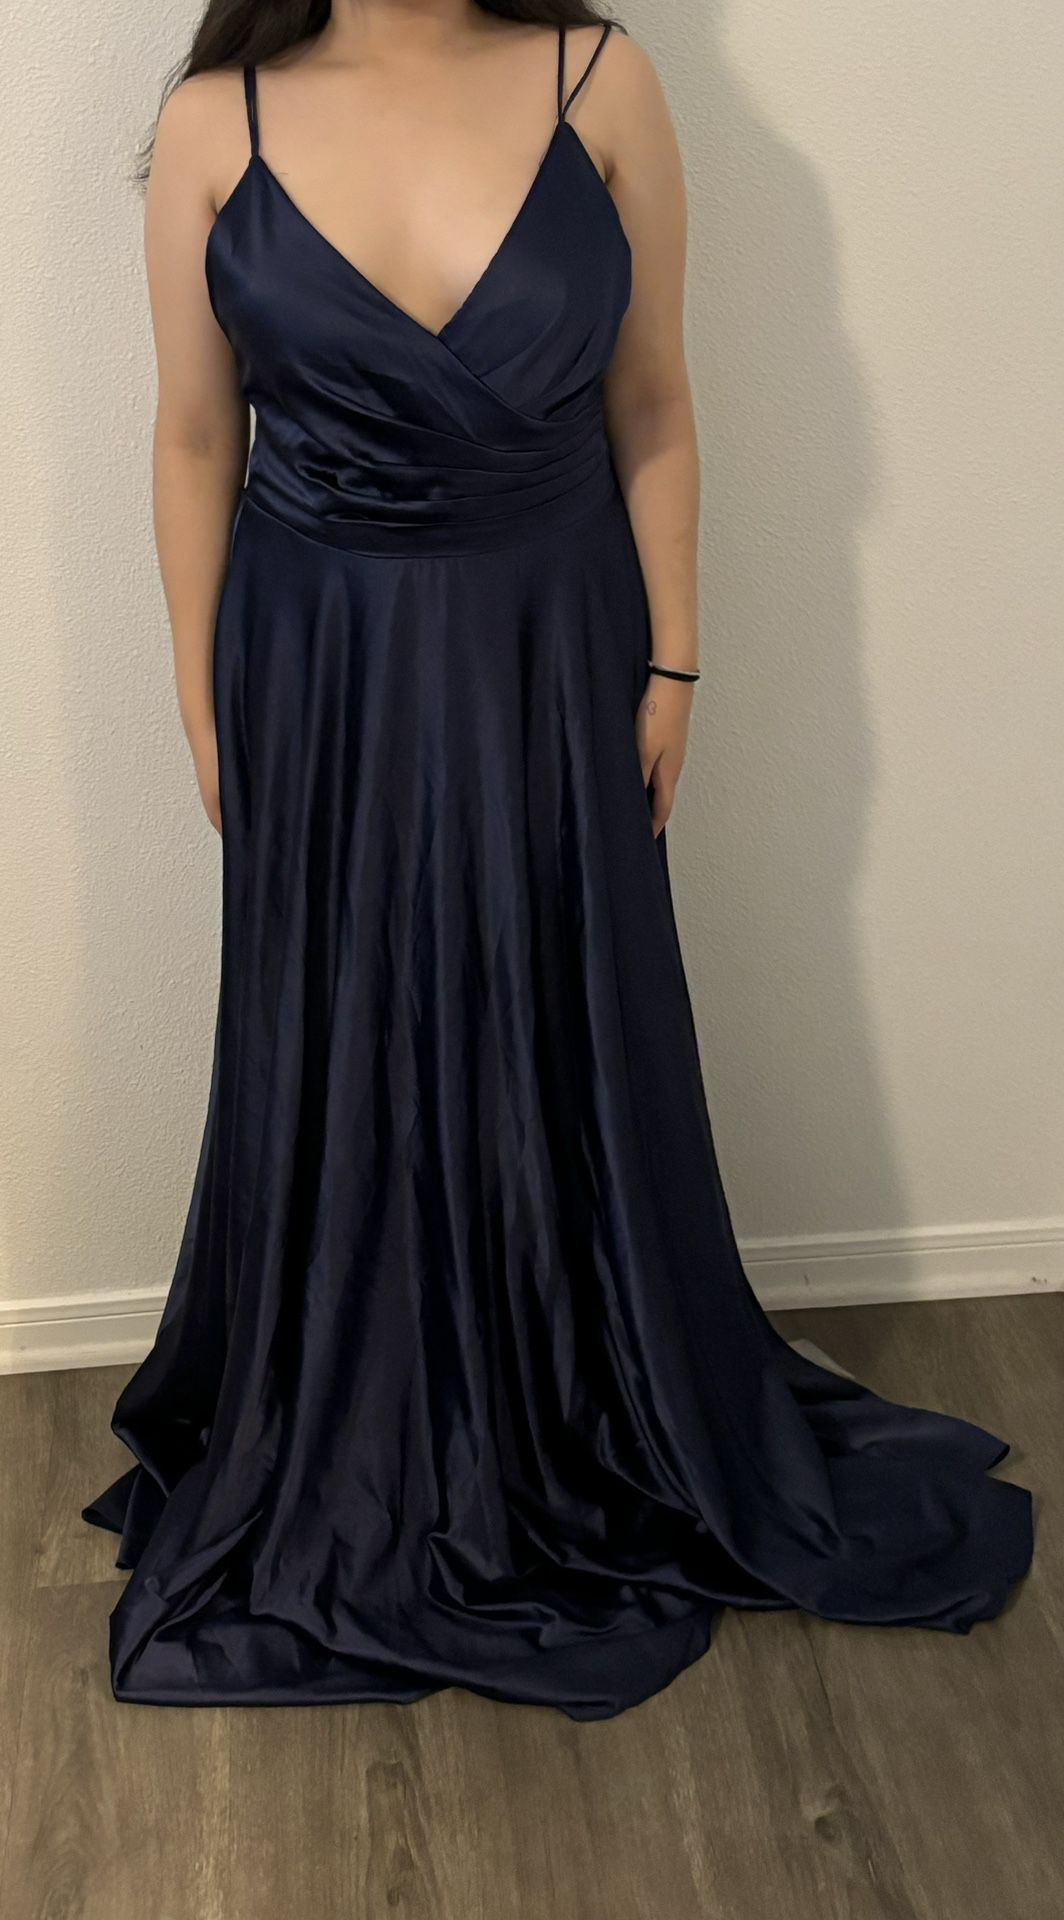 Blue Prom / Graduation Dress 